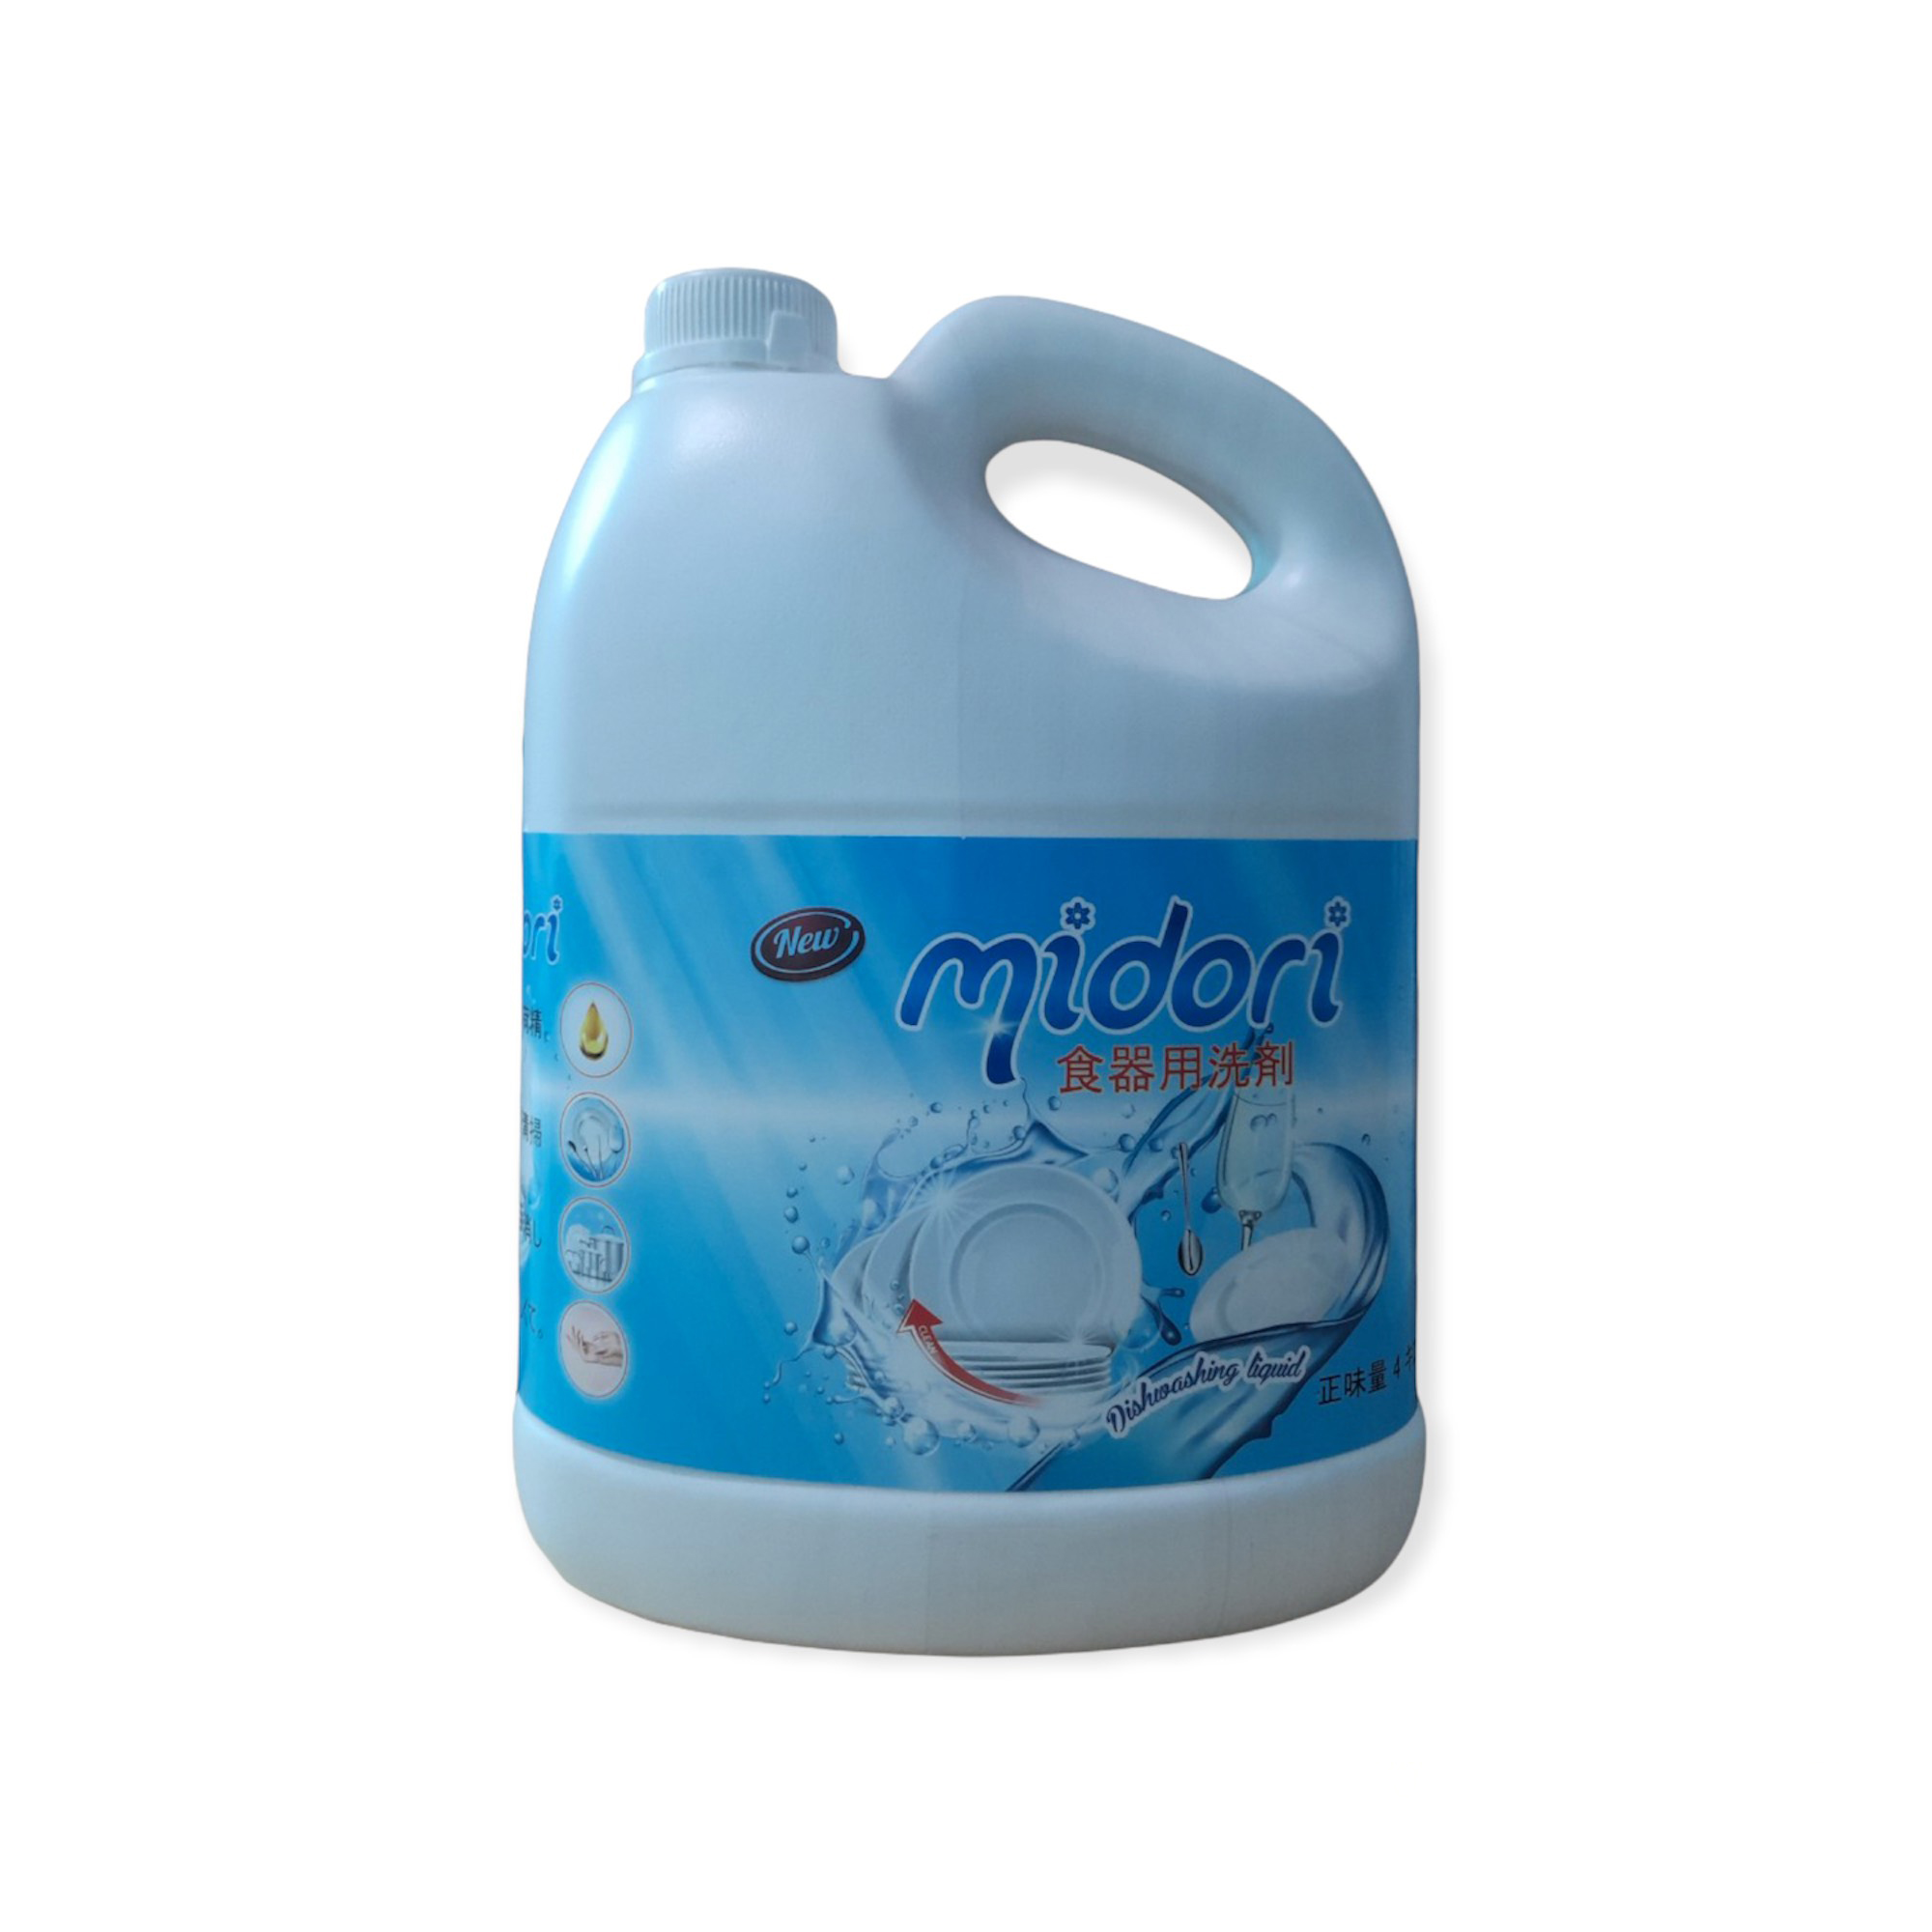 Nước rửa chén Midori can 4 lít